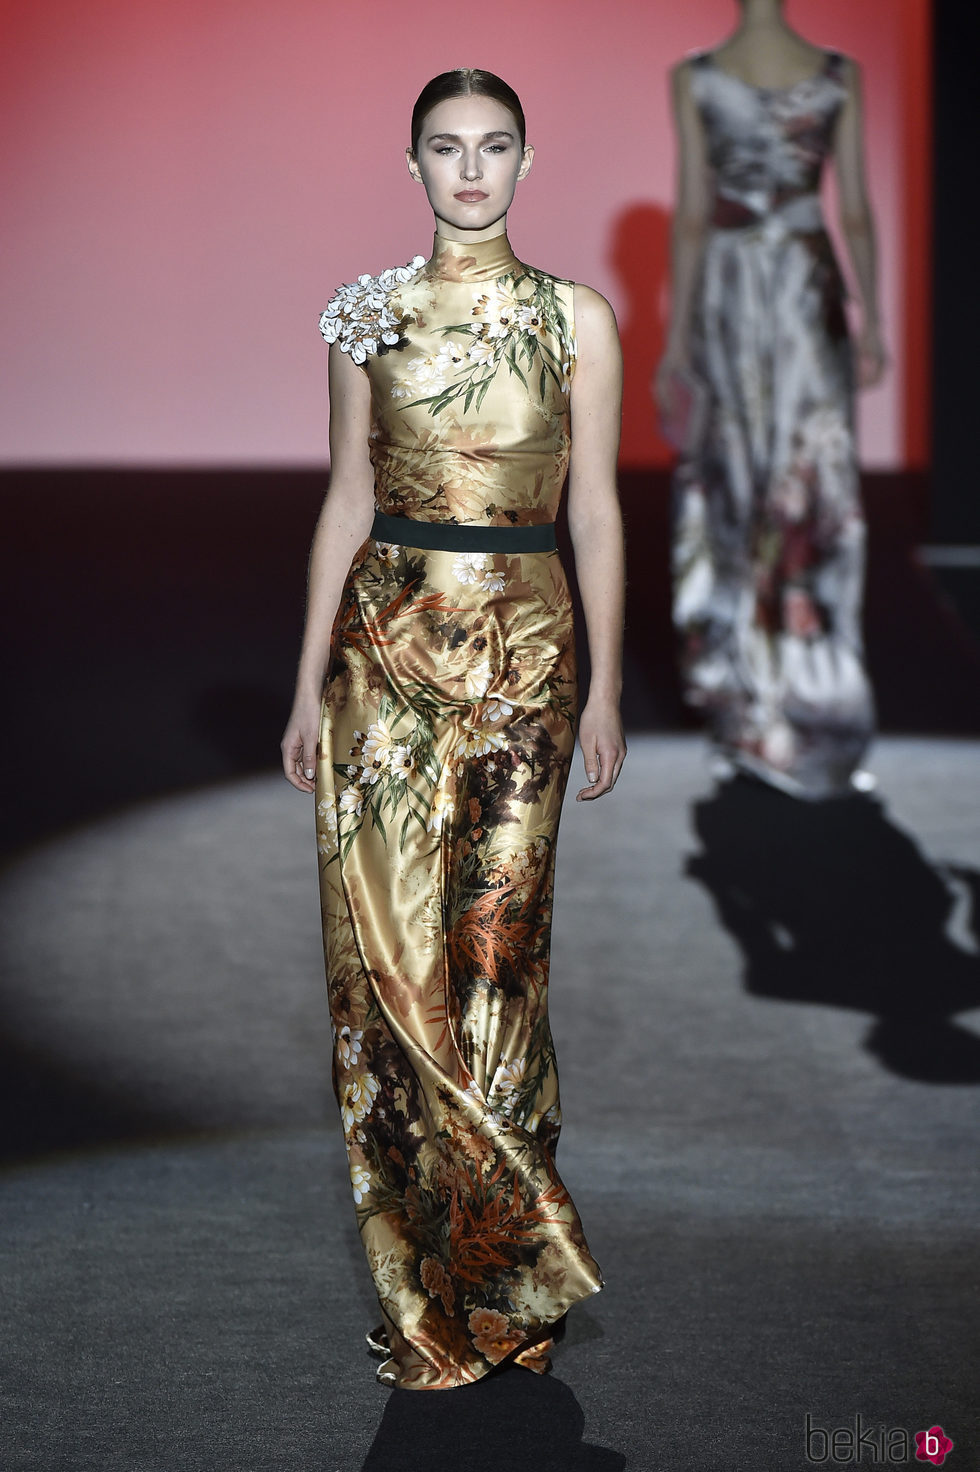 Vestido de raso color avellana con estampado floral de Hannibal Laguna de la colección otoño/invierno 2017/2018 en Madrid Fashion Week